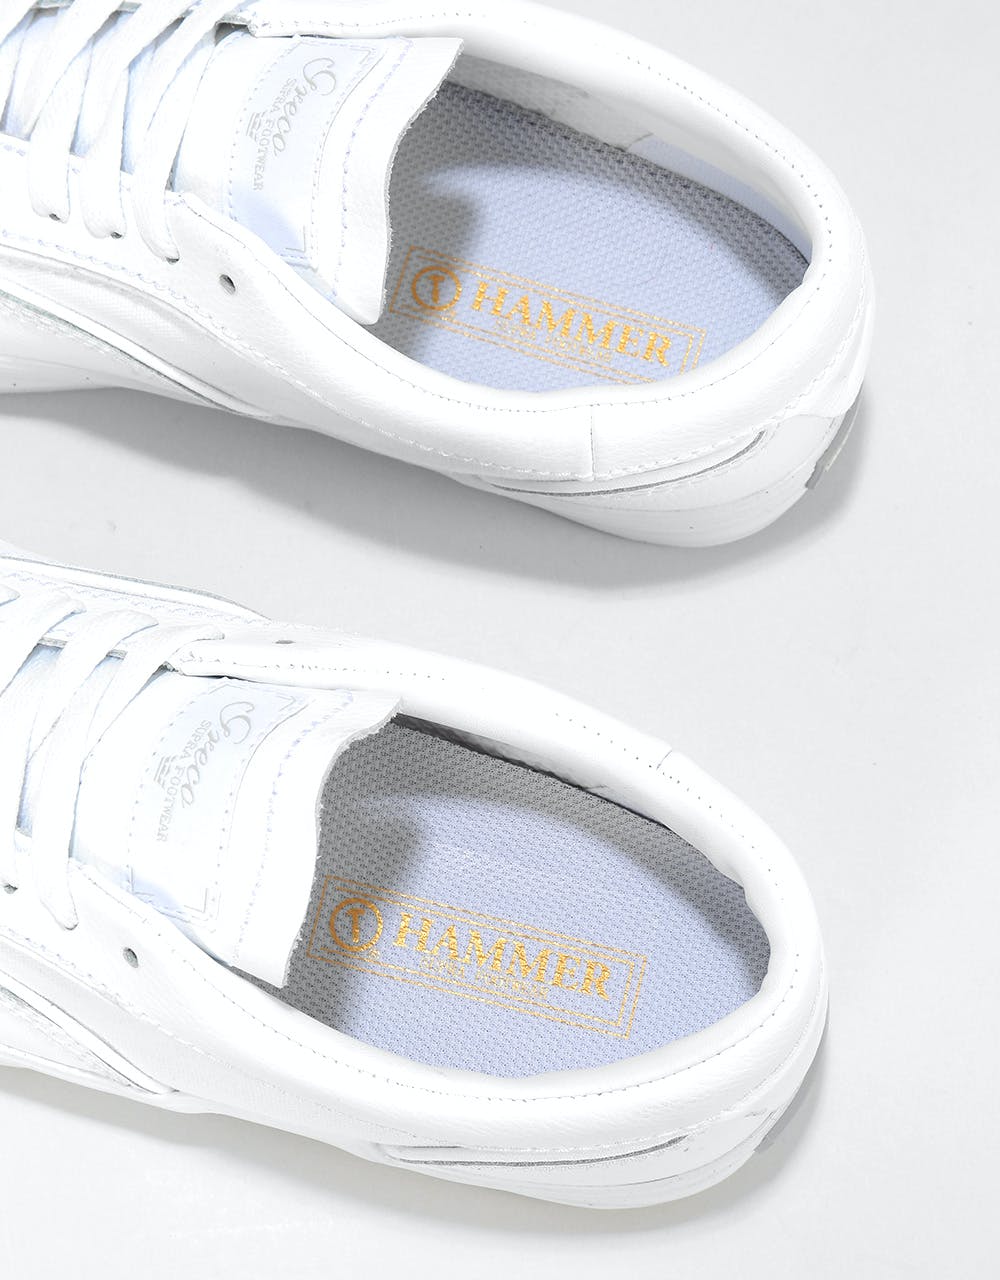 Supra Hammer VTG Skate Shoes - White/White